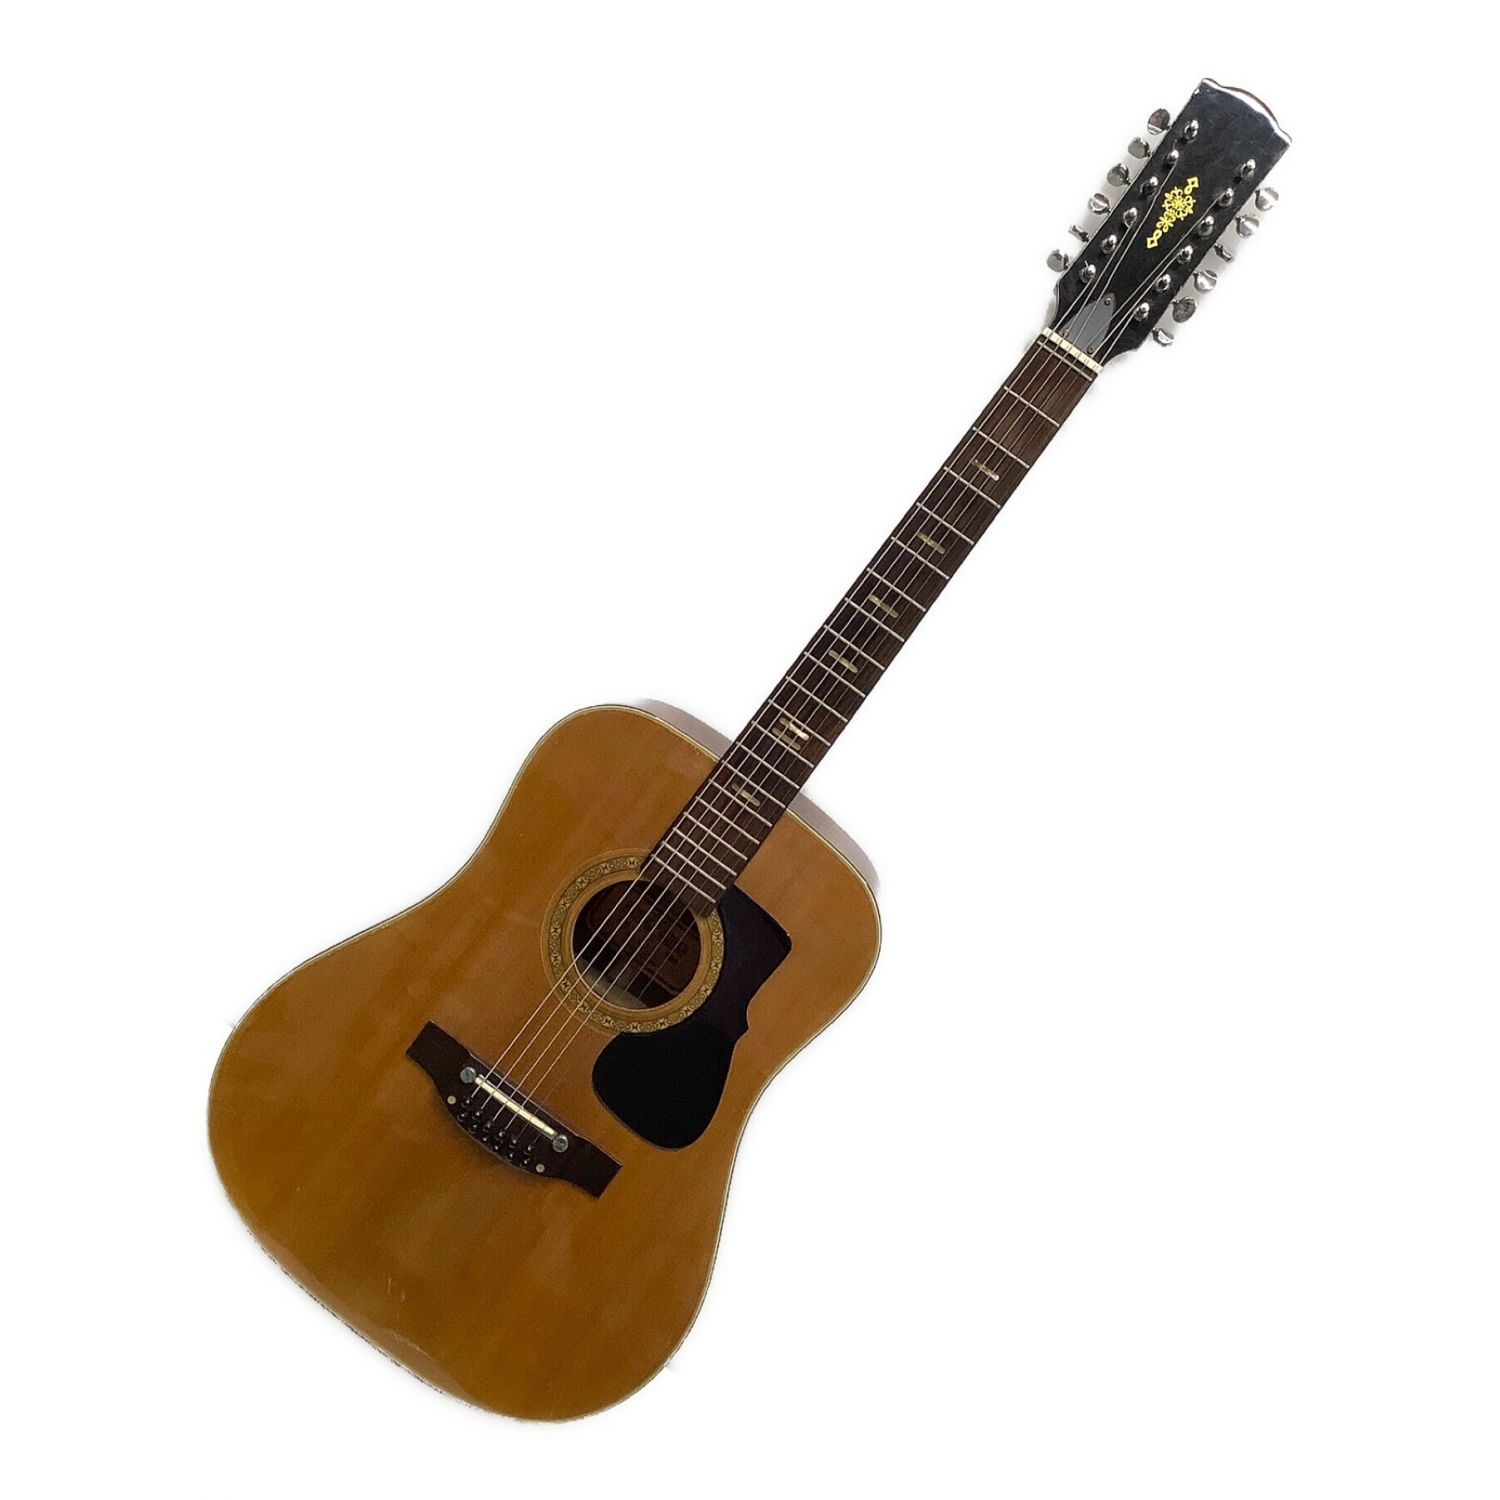 KASUGA 春日 アコースティックギター W-160 1968 - アコースティックギター